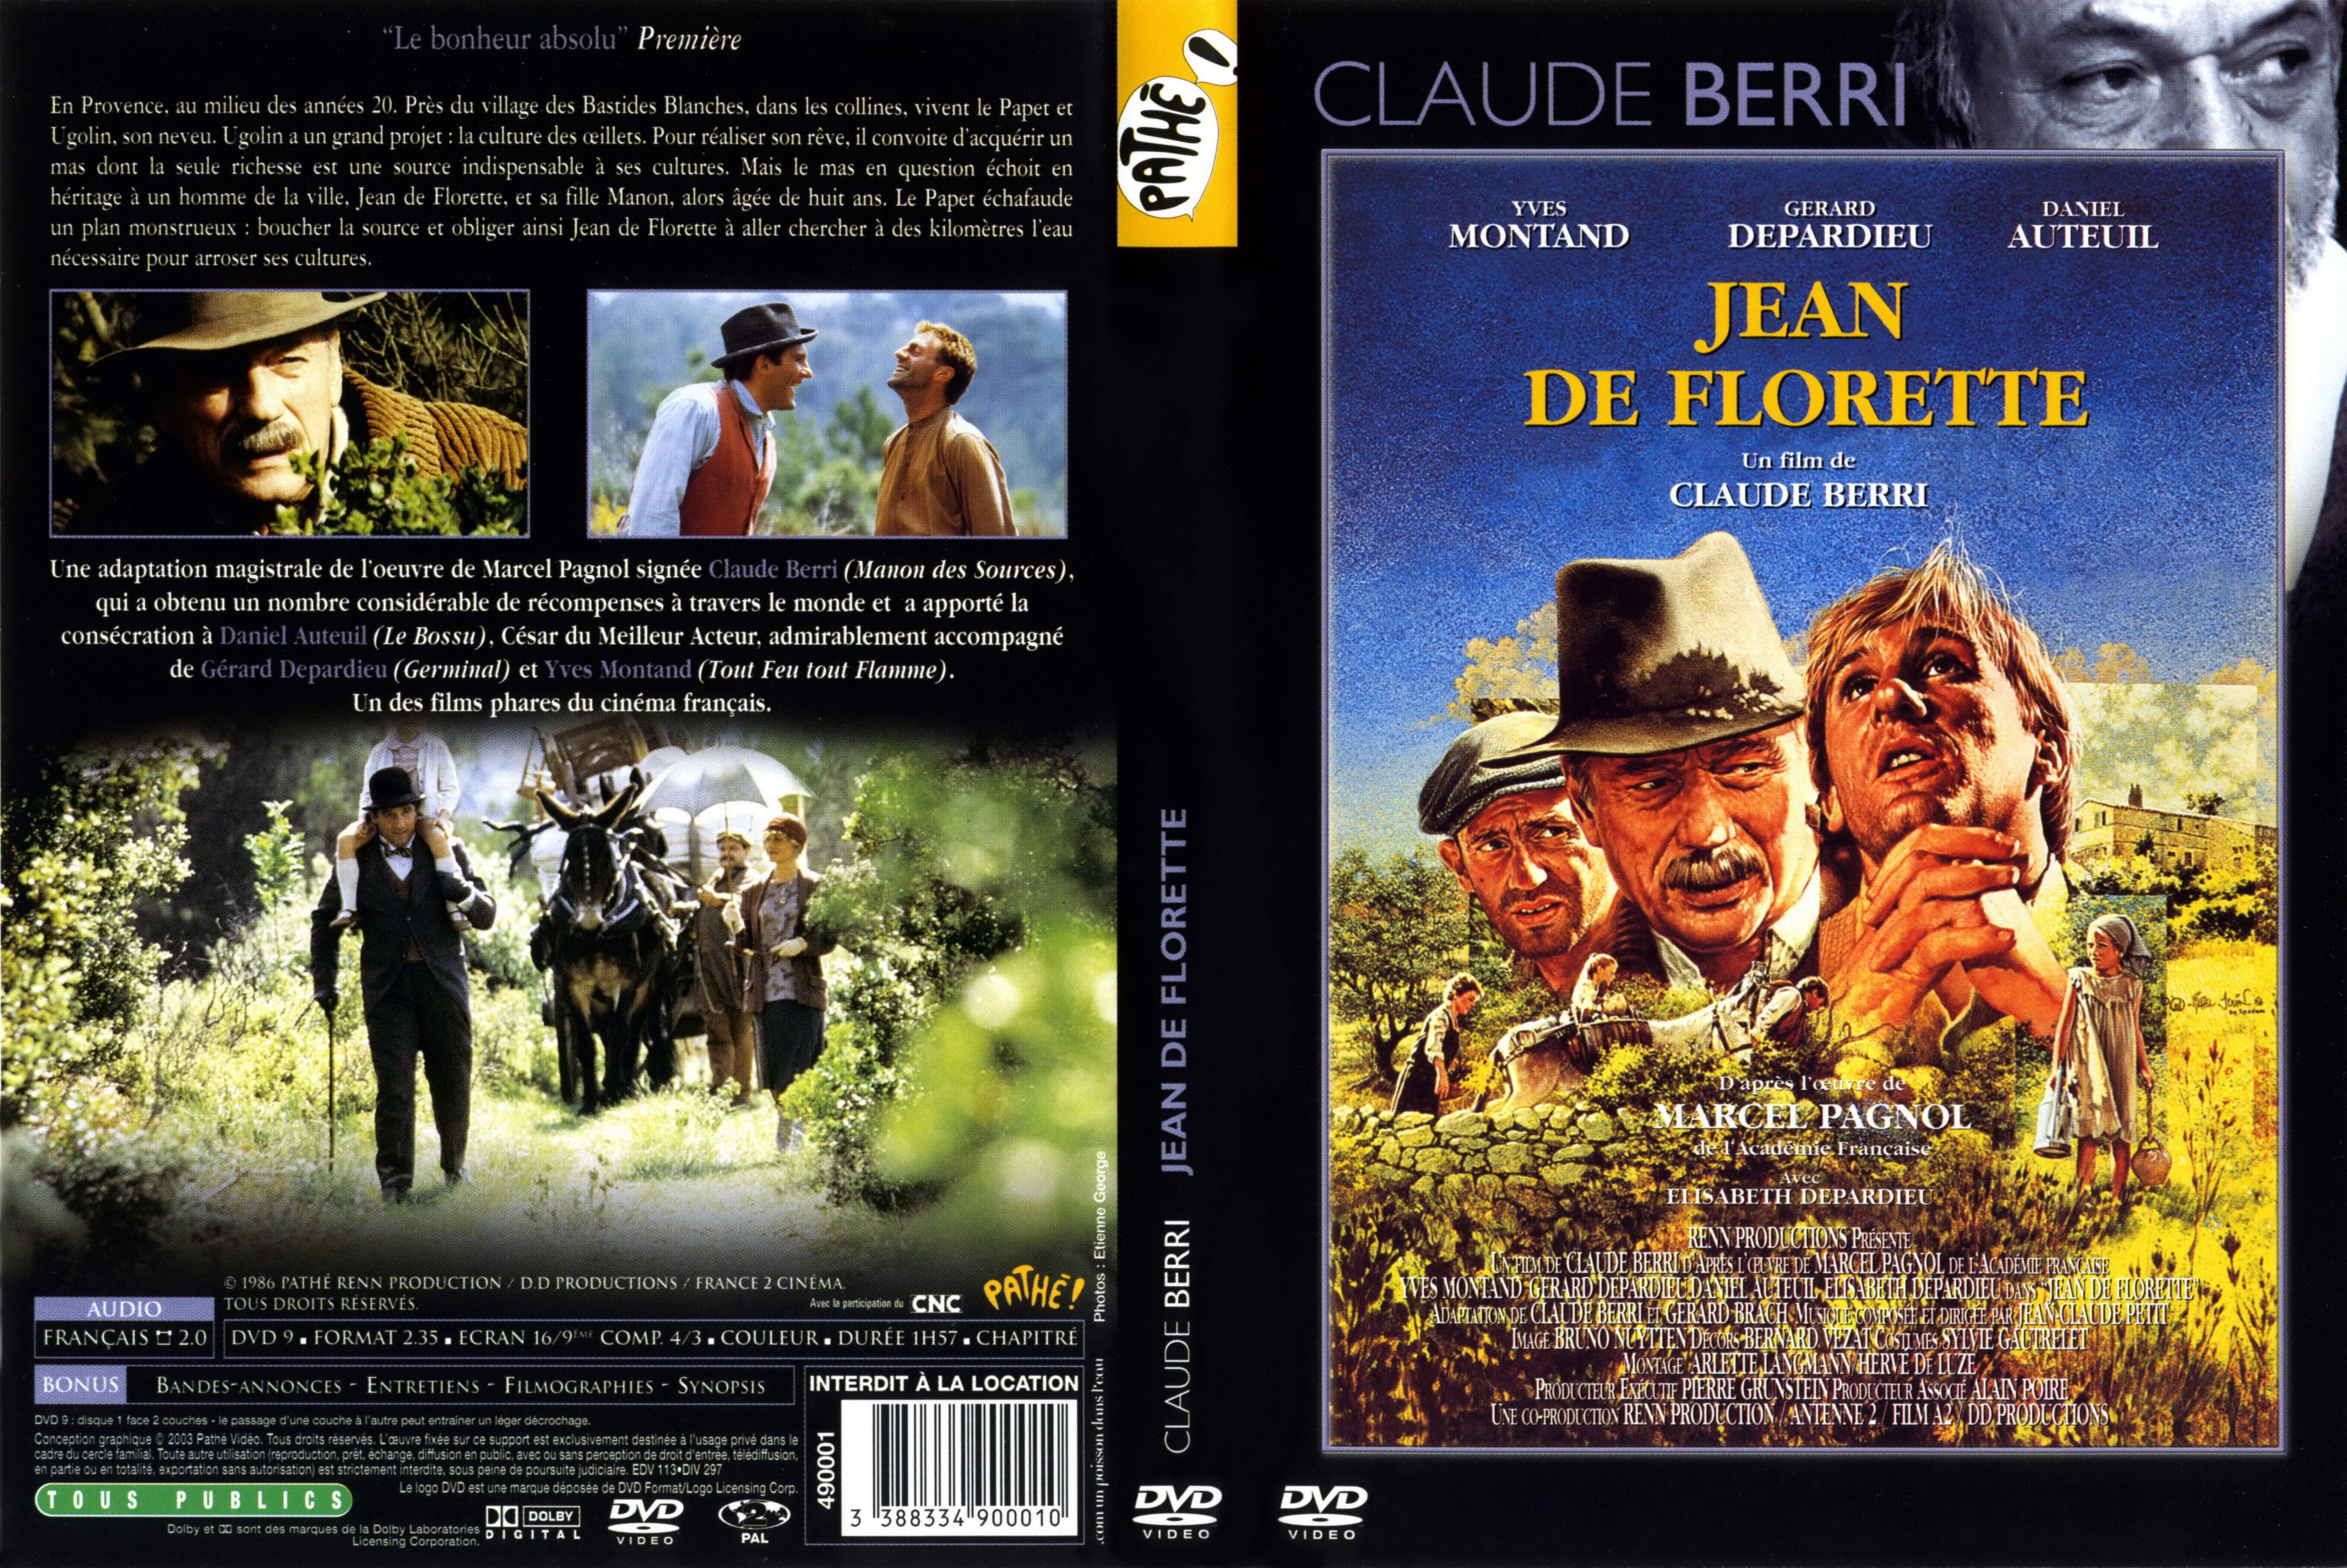 Jaquette DVD Jean de florette v3